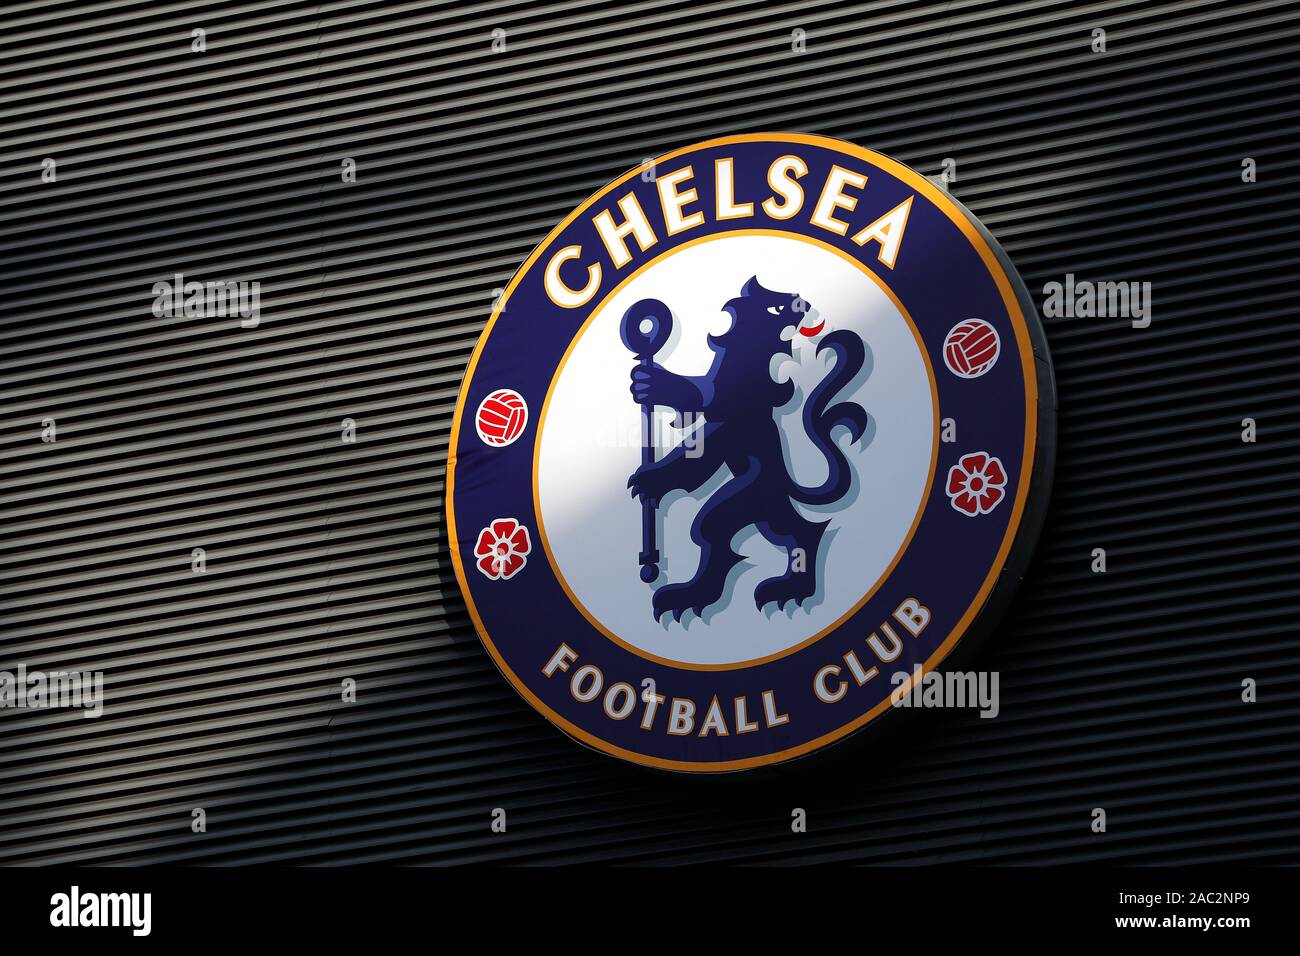 Stamford Bridge, Londres, Unido. 30 Nov, 2019. La Liga inglesa de fútbol, Chelsea contra el West Ham United, Chelsea insignia de una pared - estrictamente sólo para uso editorial. No uso